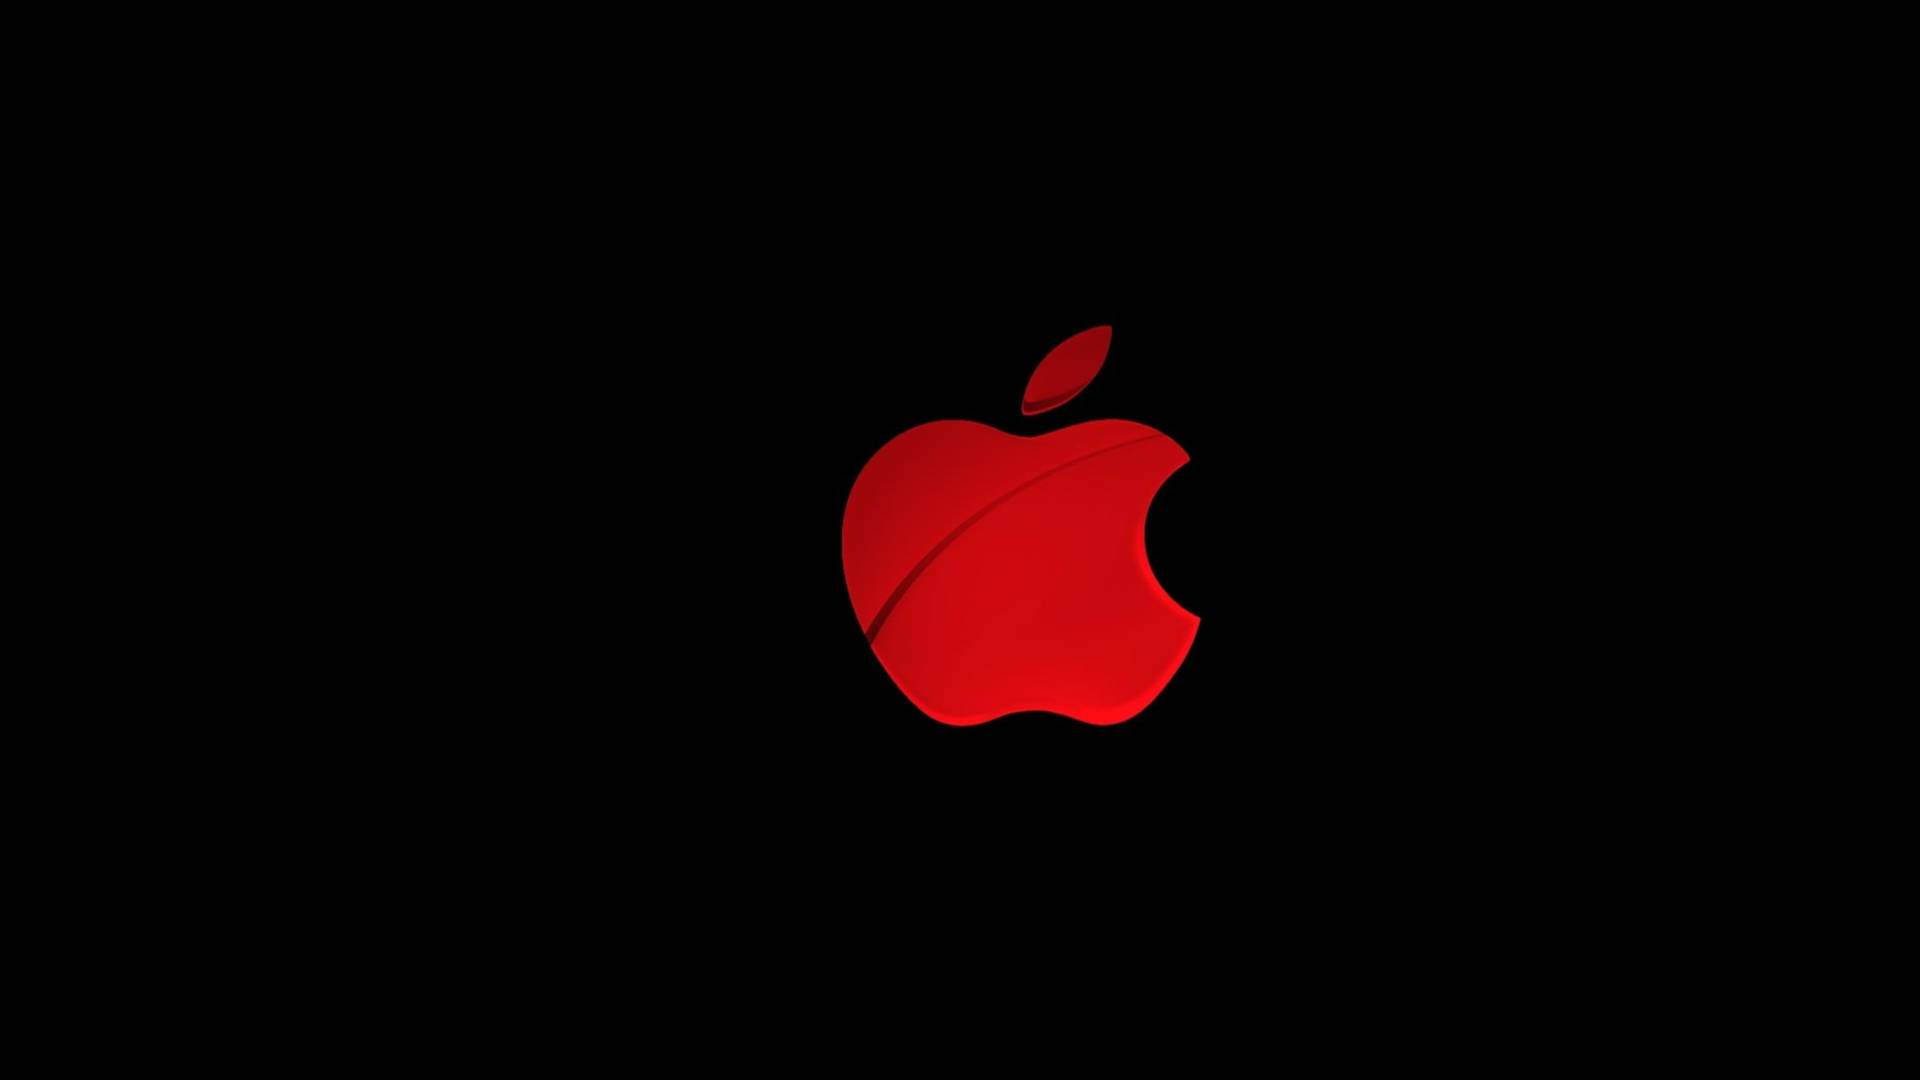 Apple 4k Ultra Hd Red Logo Wallpaper